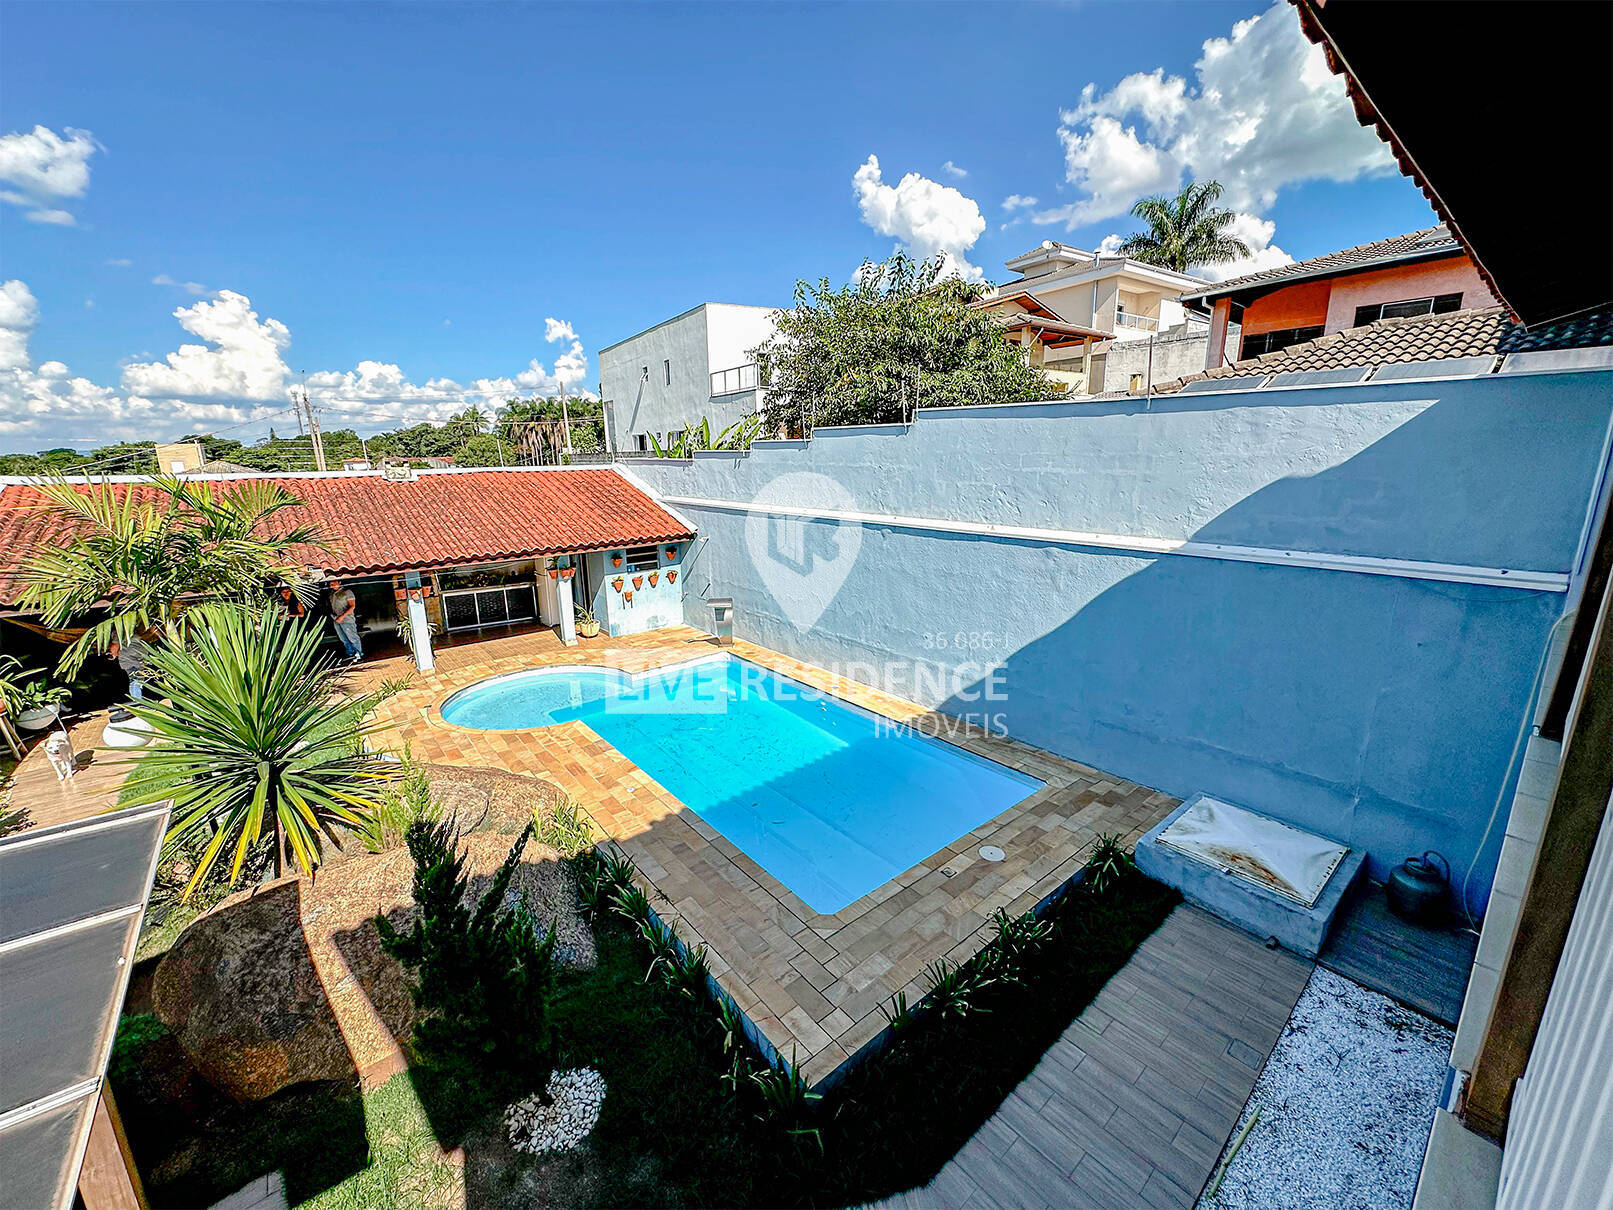 Casa residencia com piscina na cidade de Itatiba/SP